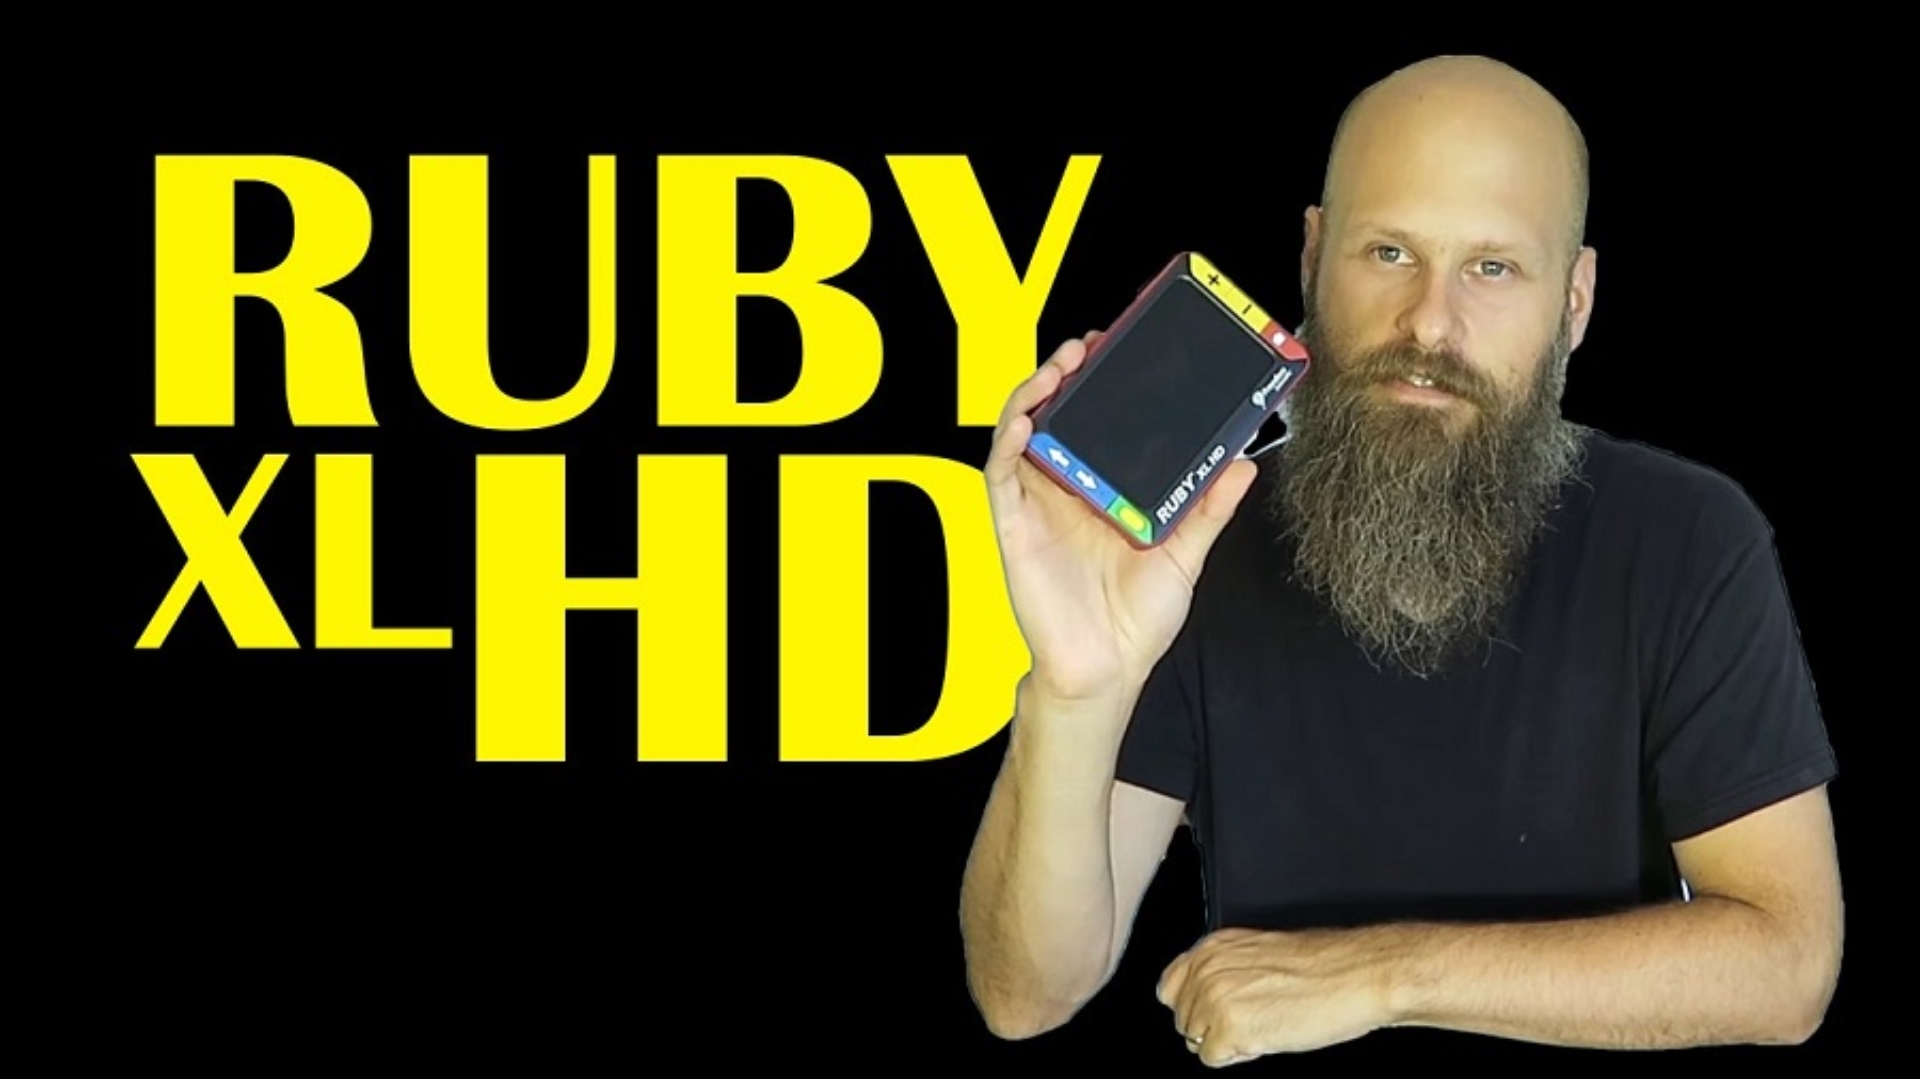 Sam trying the Ruby XL HD